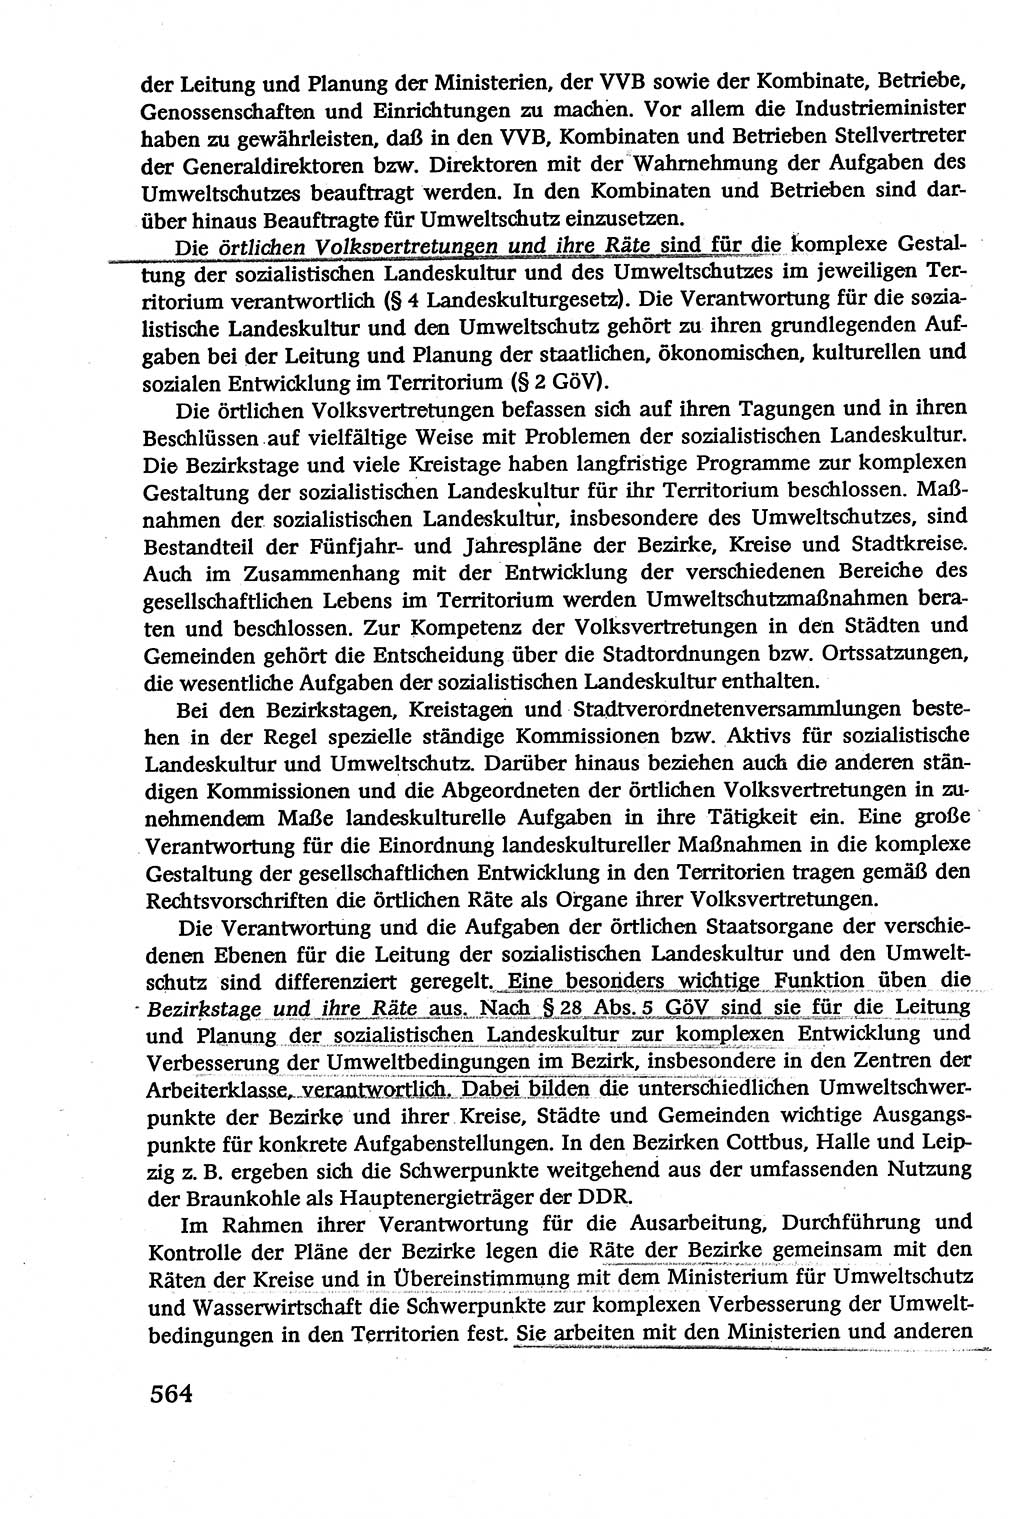 Verwaltungsrecht [Deutsche Demokratische Republik (DDR)], Lehrbuch 1979, Seite 564 (Verw.-R. DDR Lb. 1979, S. 564)